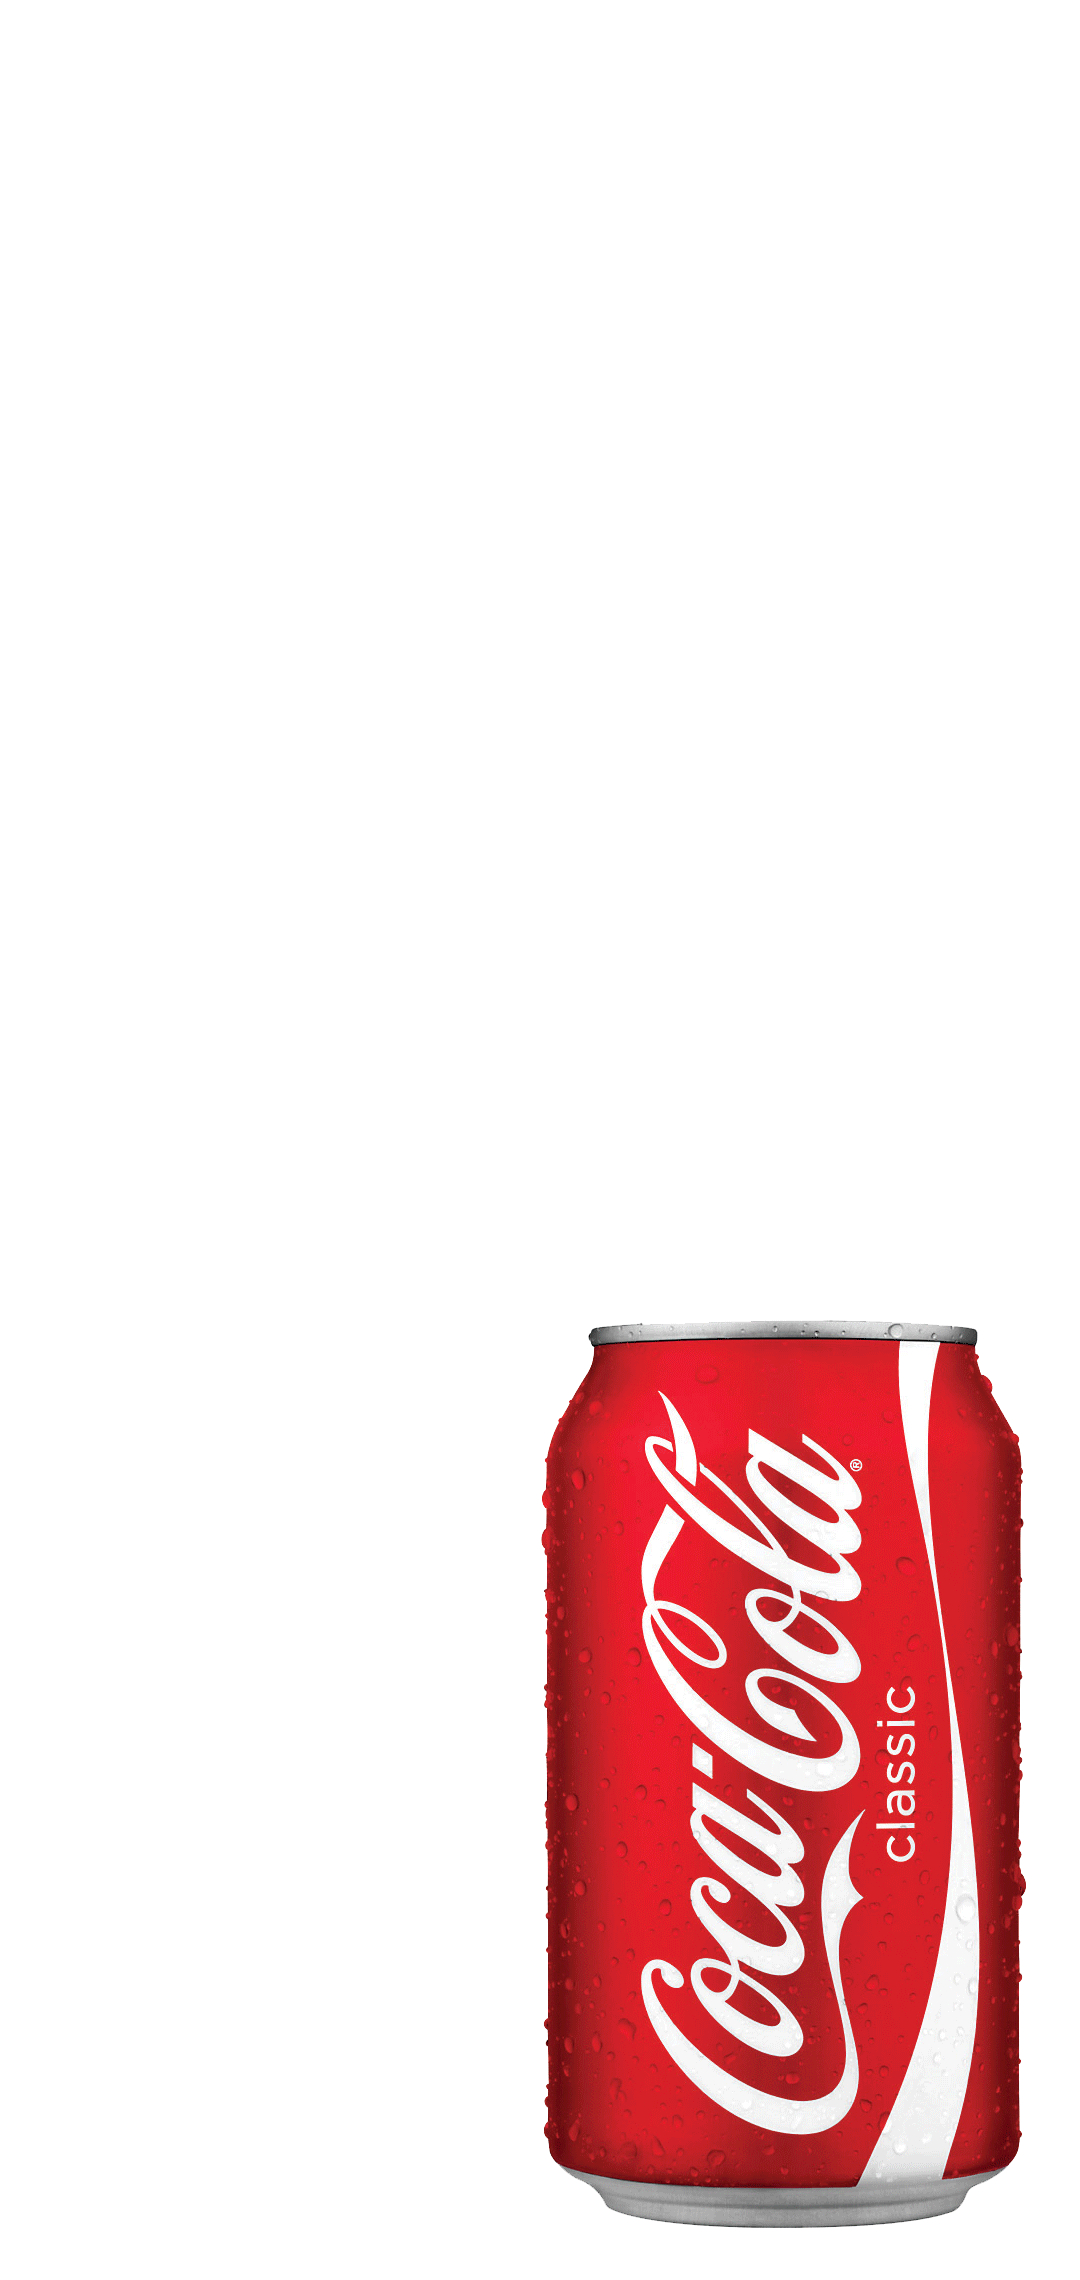 コカ コーラ 缶 Aquos Sense4 Basic スマホ壁紙 待ち受け スマラン